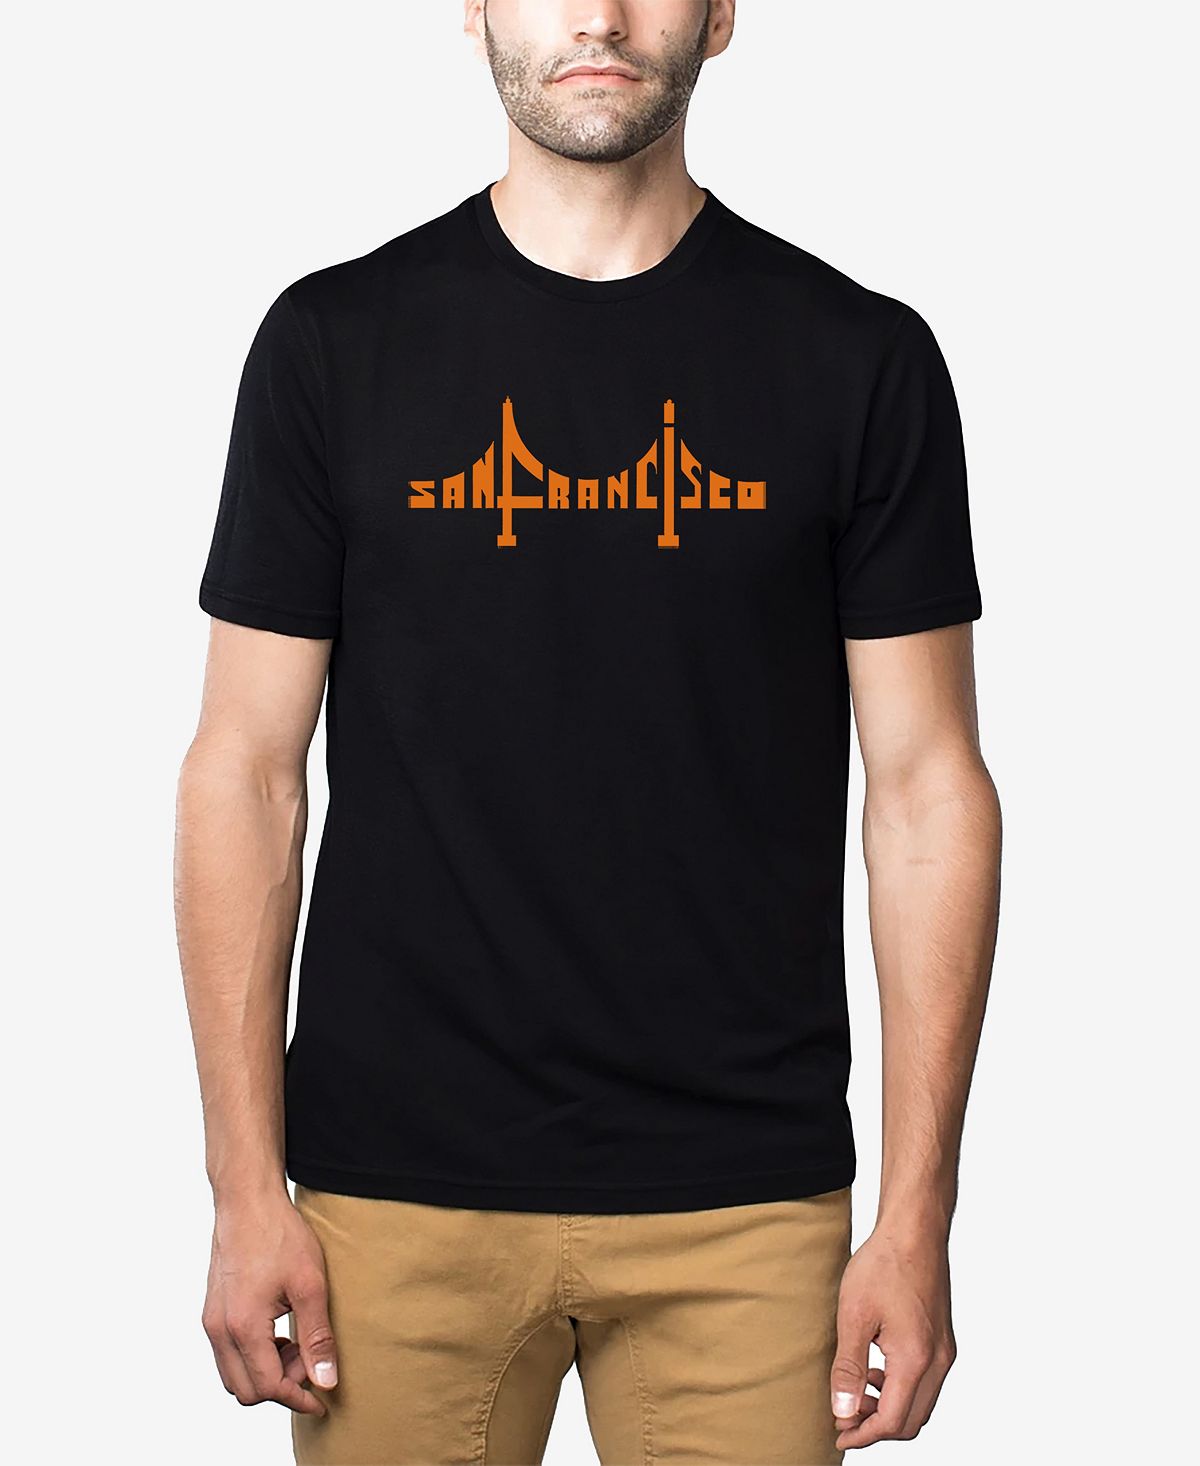 Мужская футболка премиум-класса word art с изображением моста сан-франциско LA Pop Art, черный